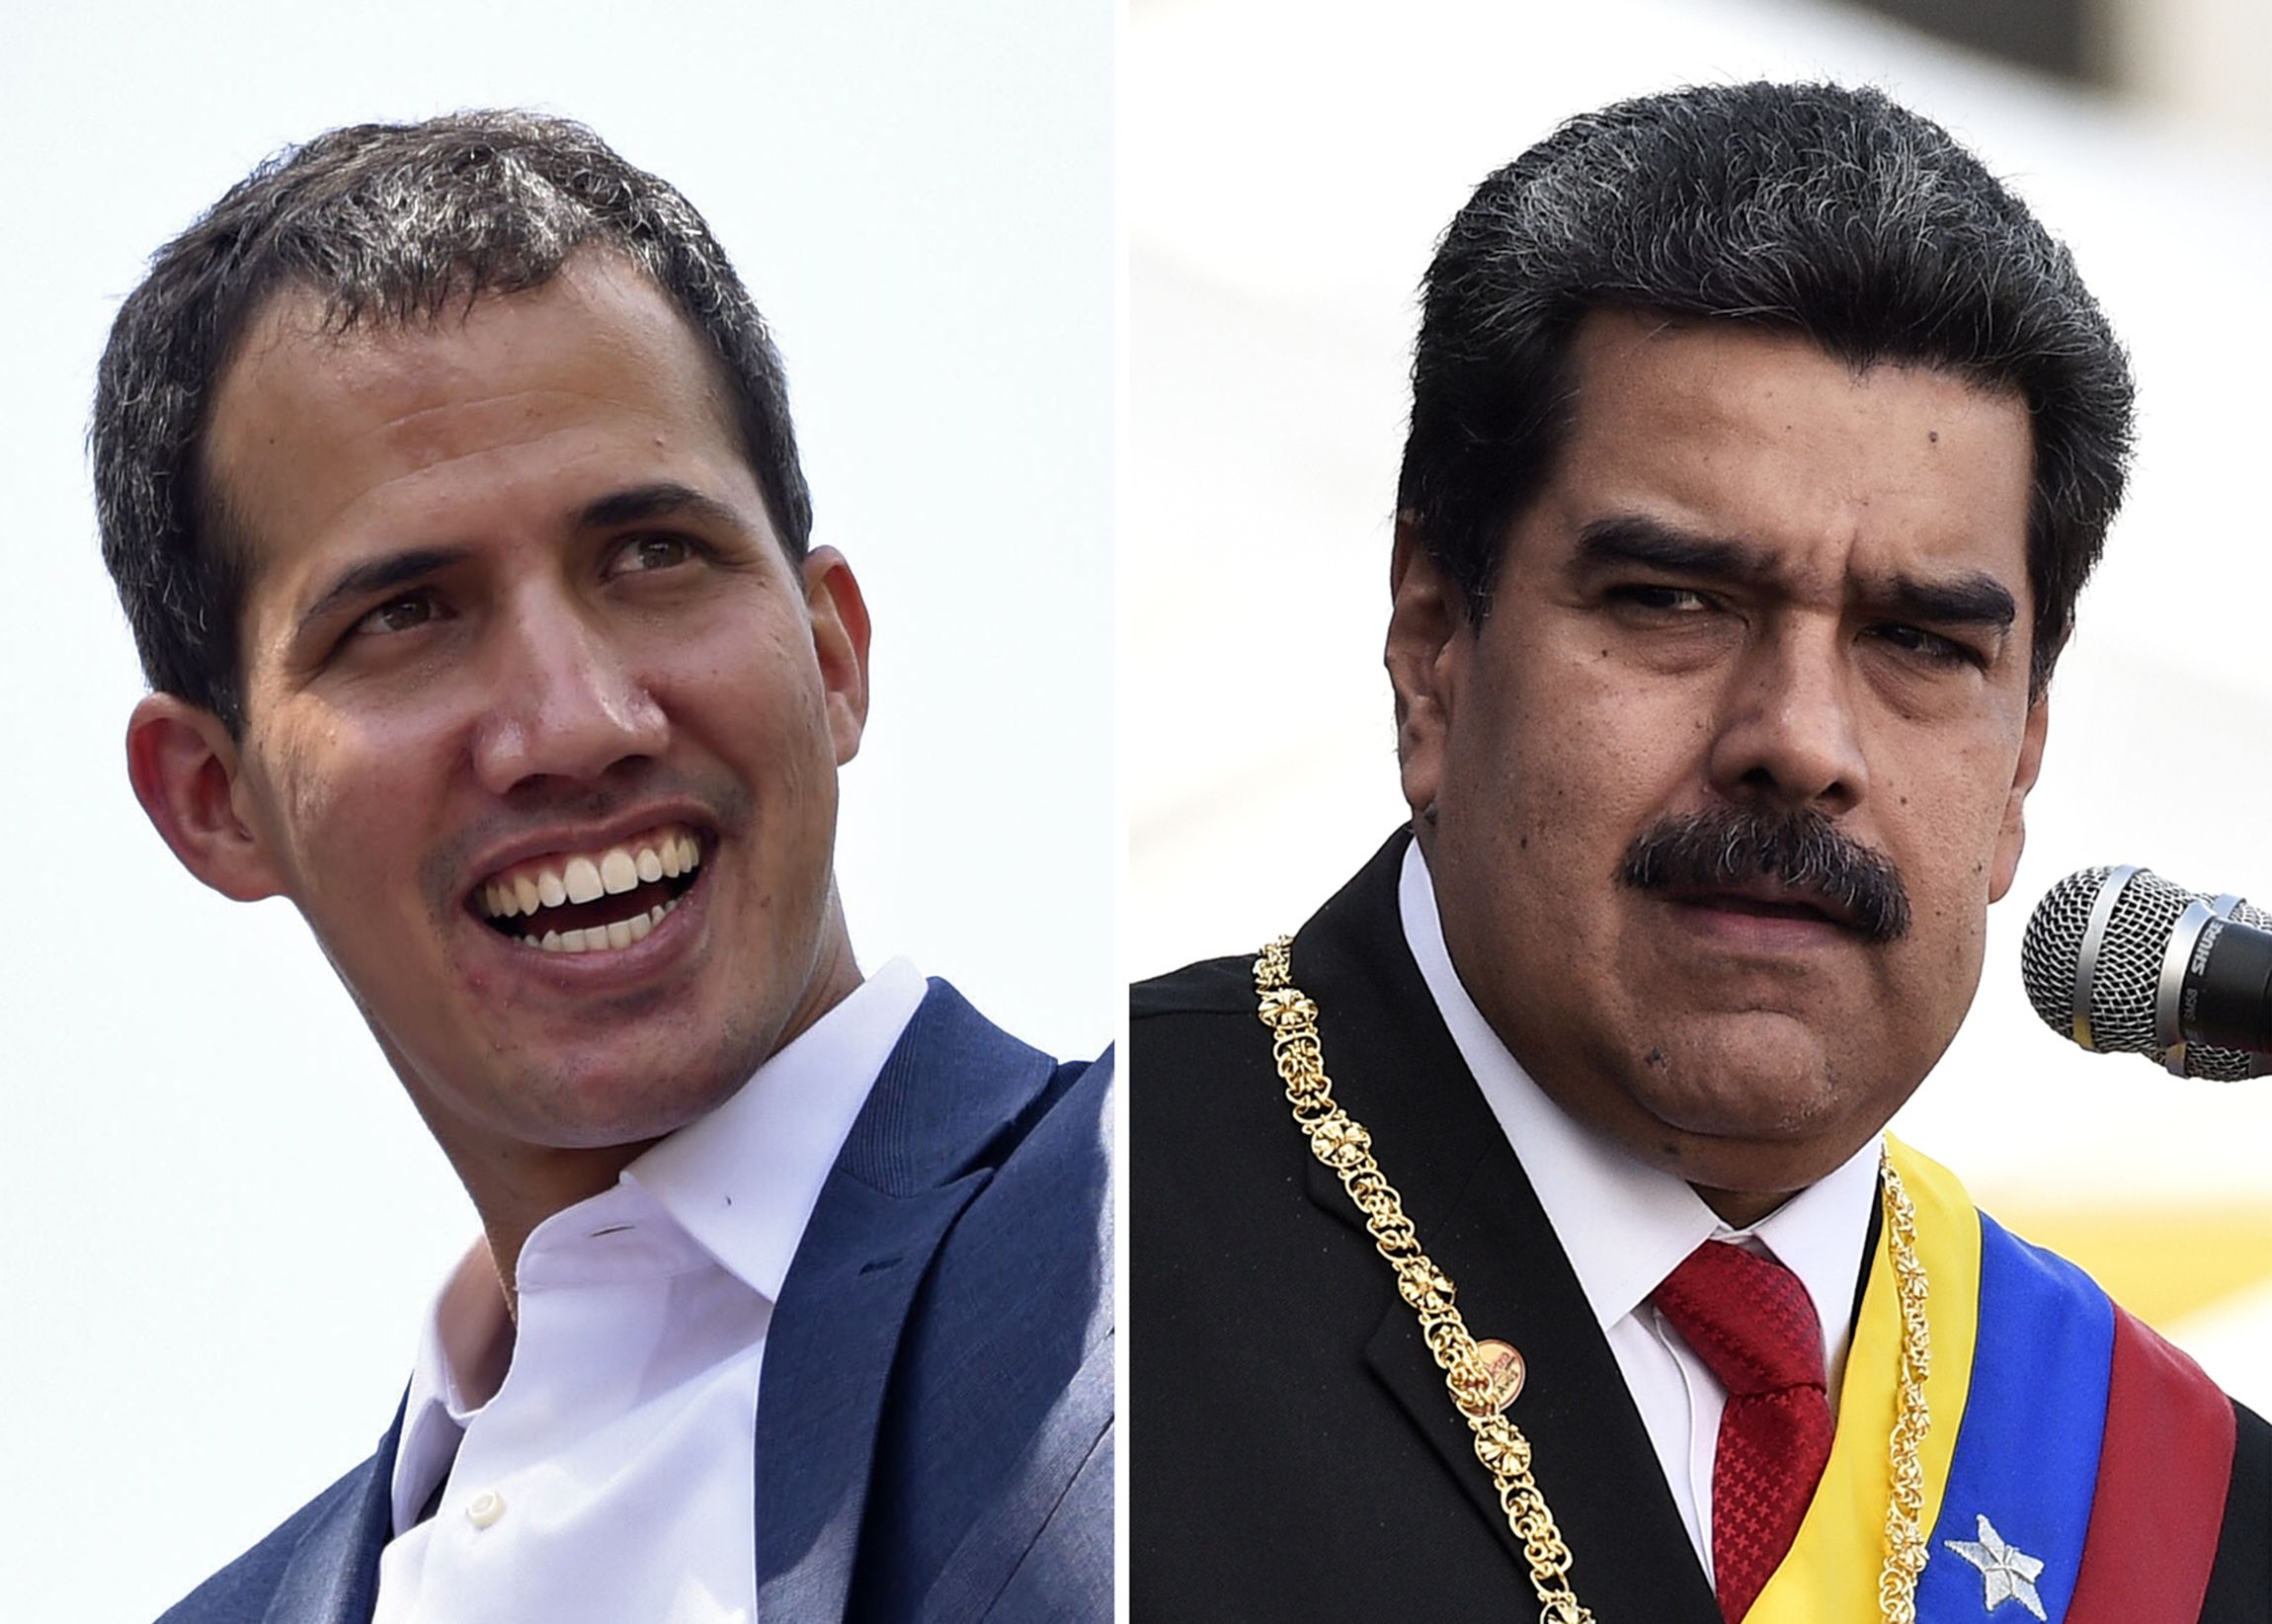 Juxtaposition of Guaido and Maduro